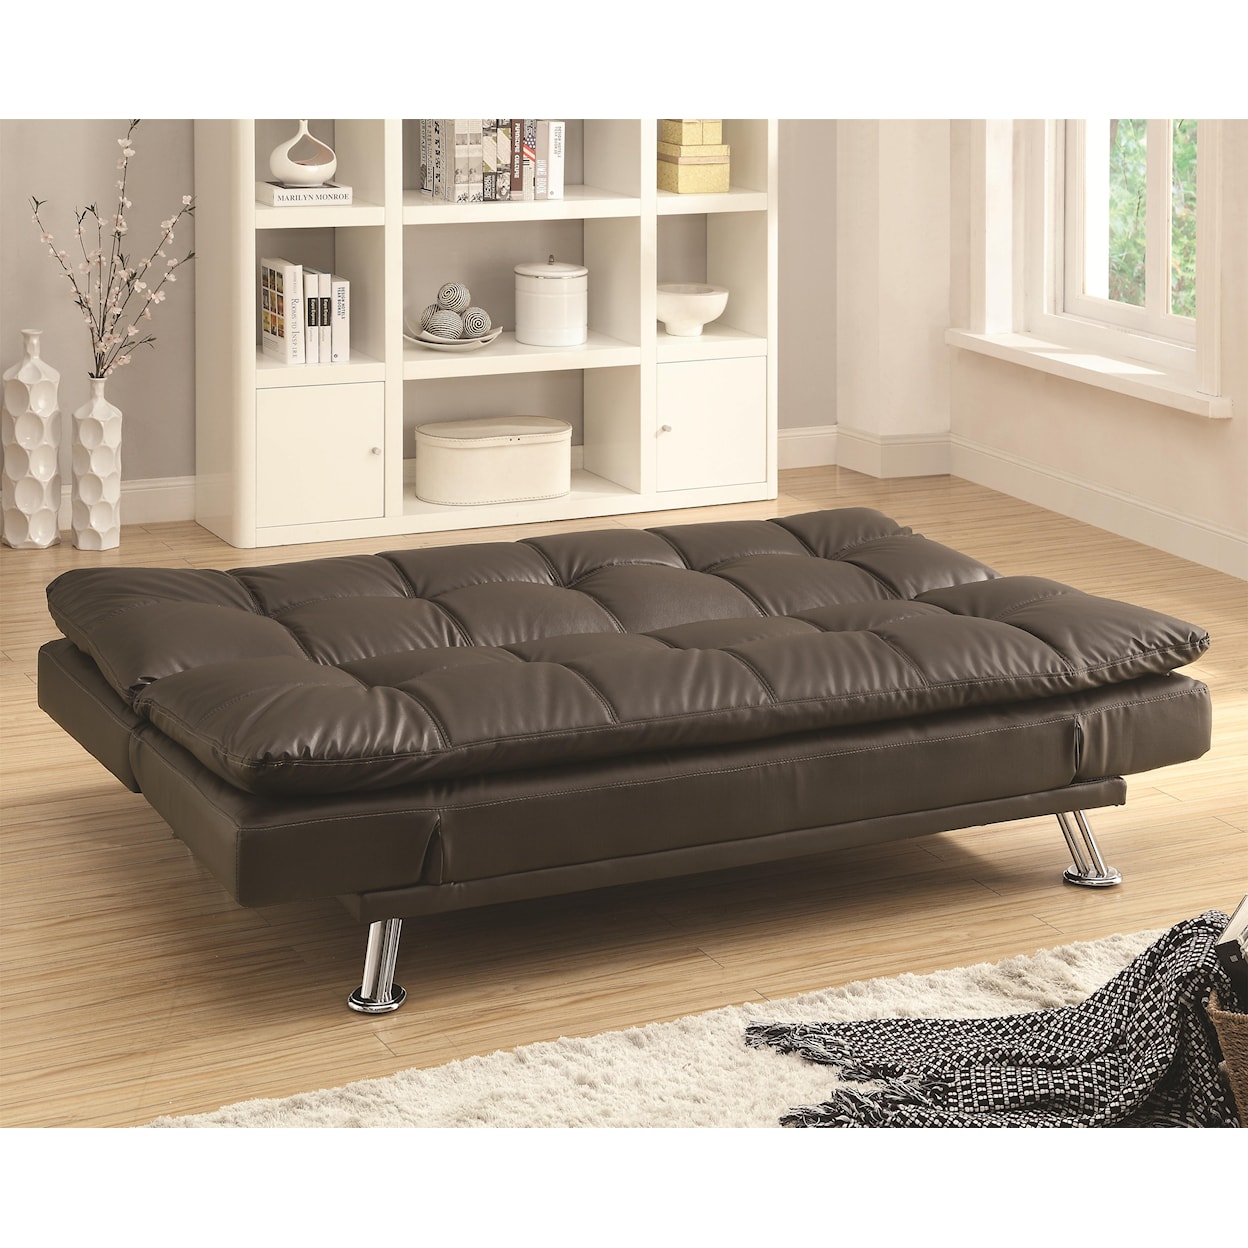 Coaster Dilleston Sofa Bed in Futon Style